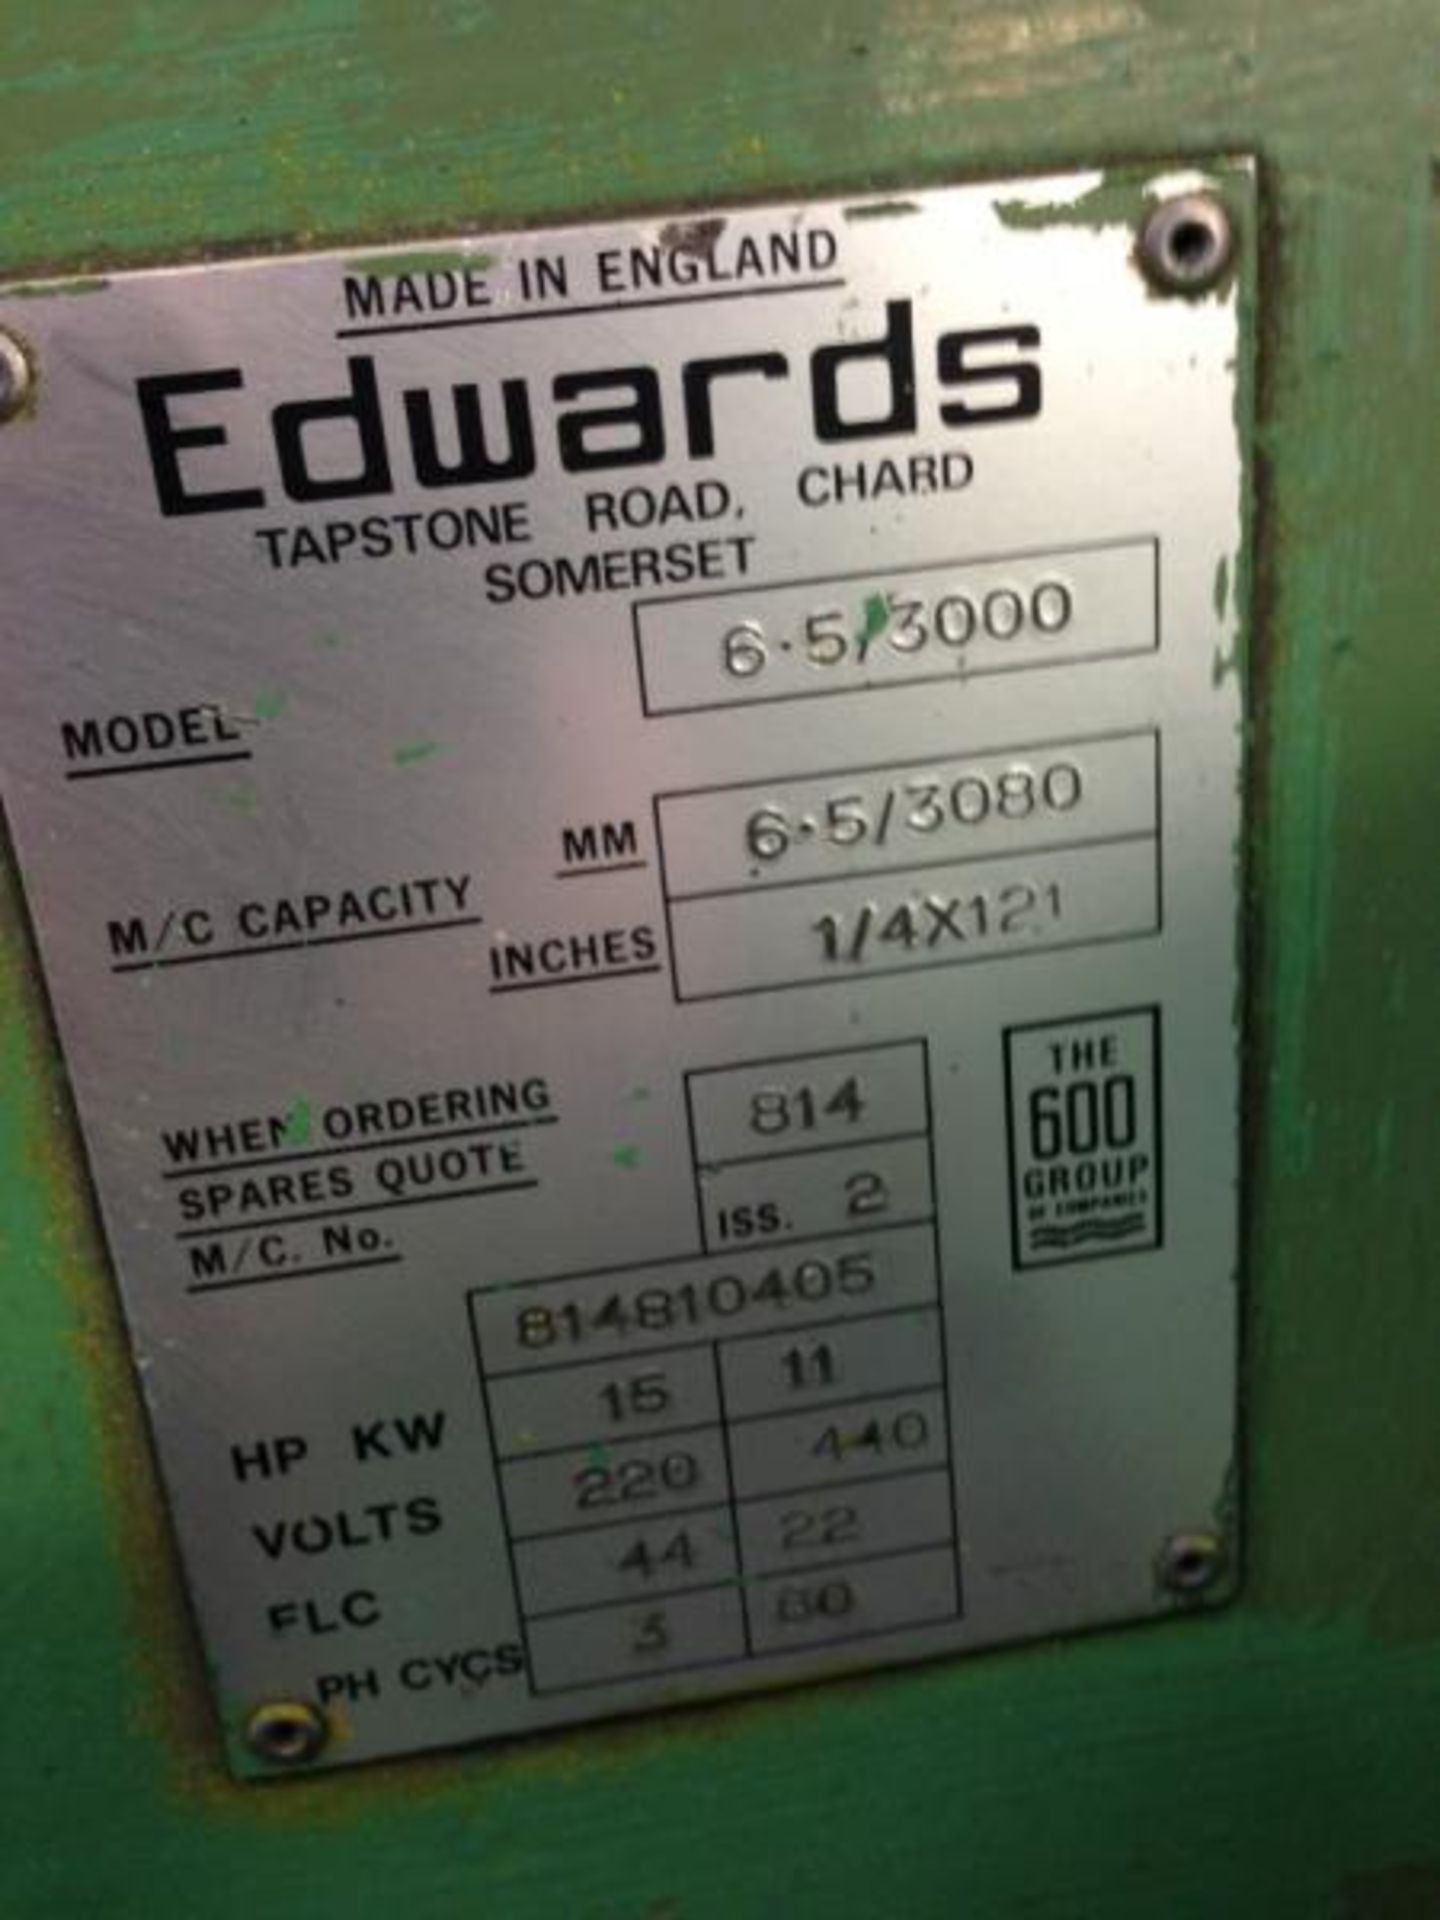 Edwards # 6.5-3000 "Truecut" Hyd. Power Shear - Image 5 of 6